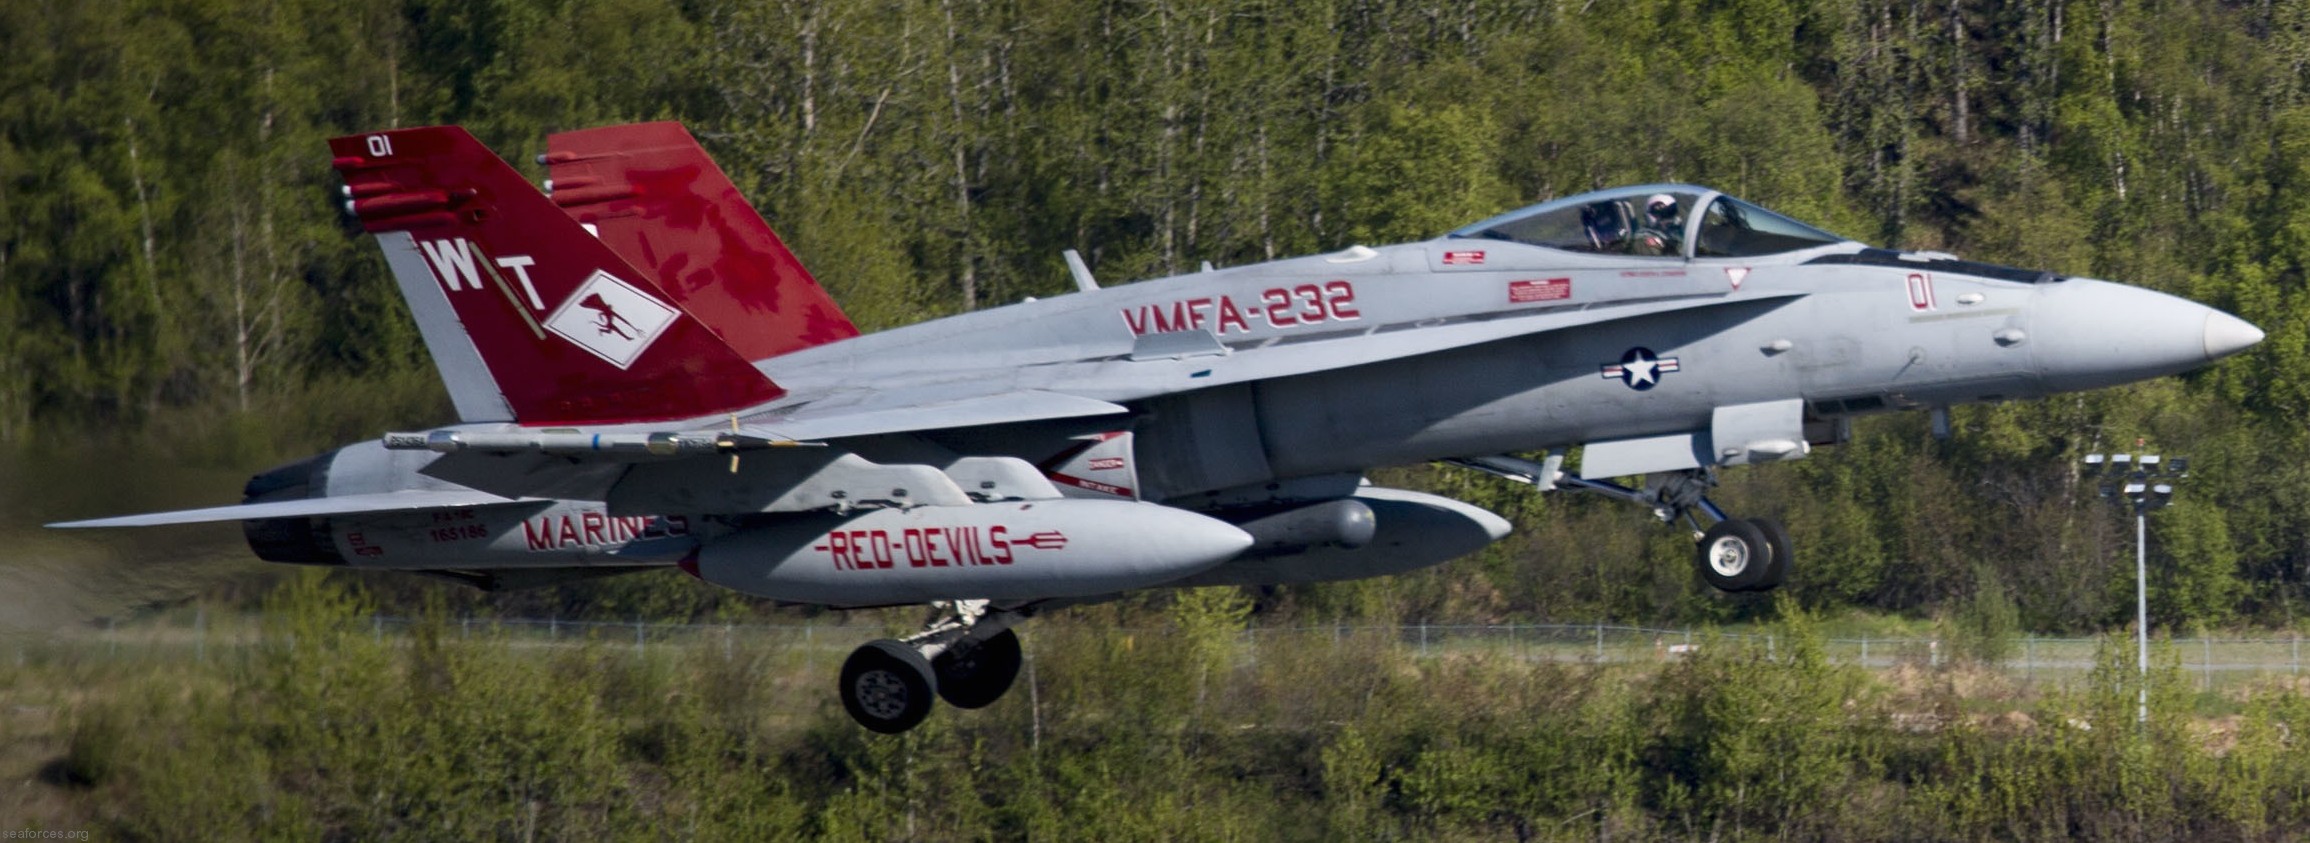 vmfa-232 red devils marine fighter attack squadron usmc f/a-18c hornet 107